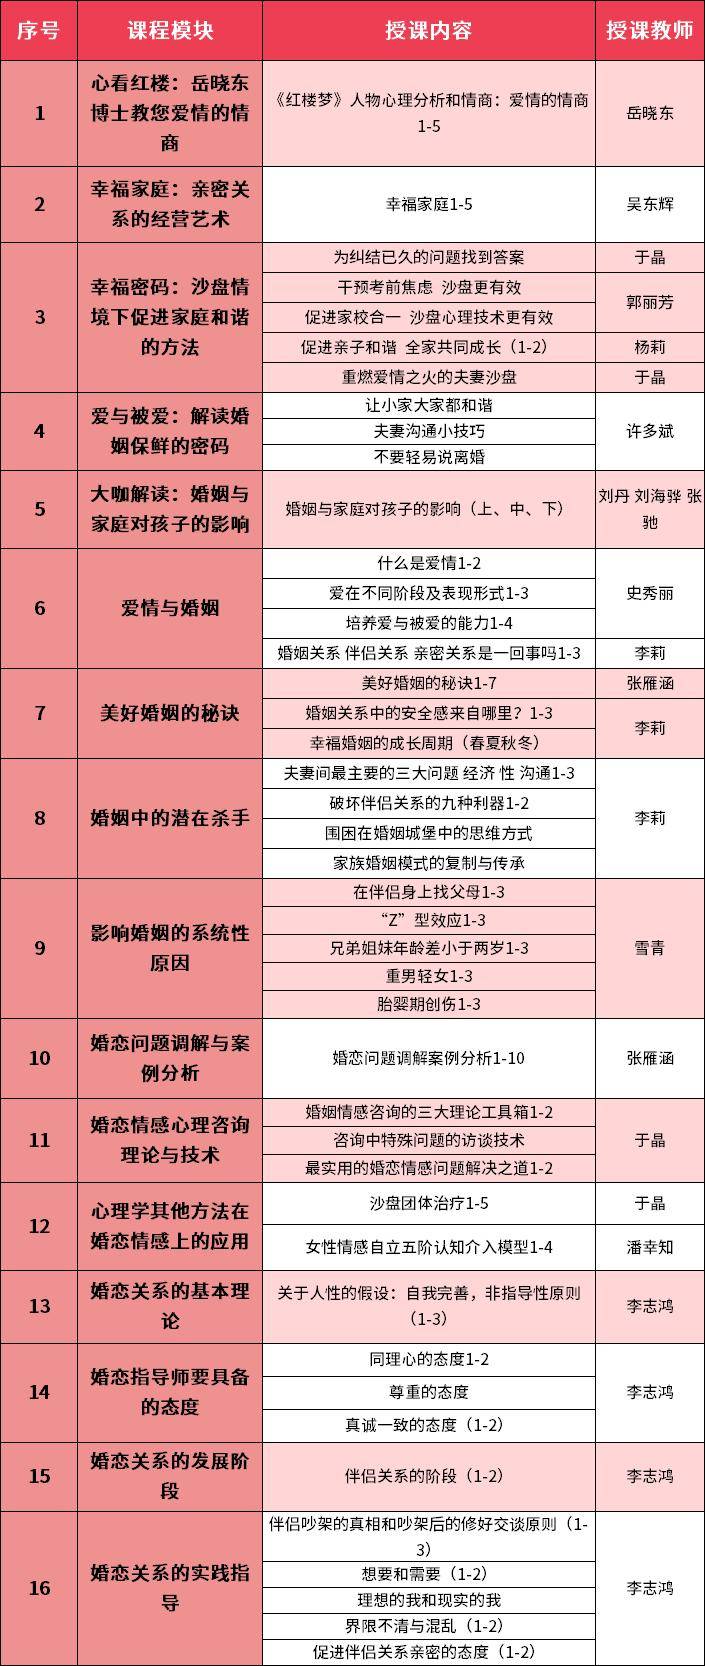 婚姻情感咨询专业能力证书项目-中国心理卫生协会(图3)